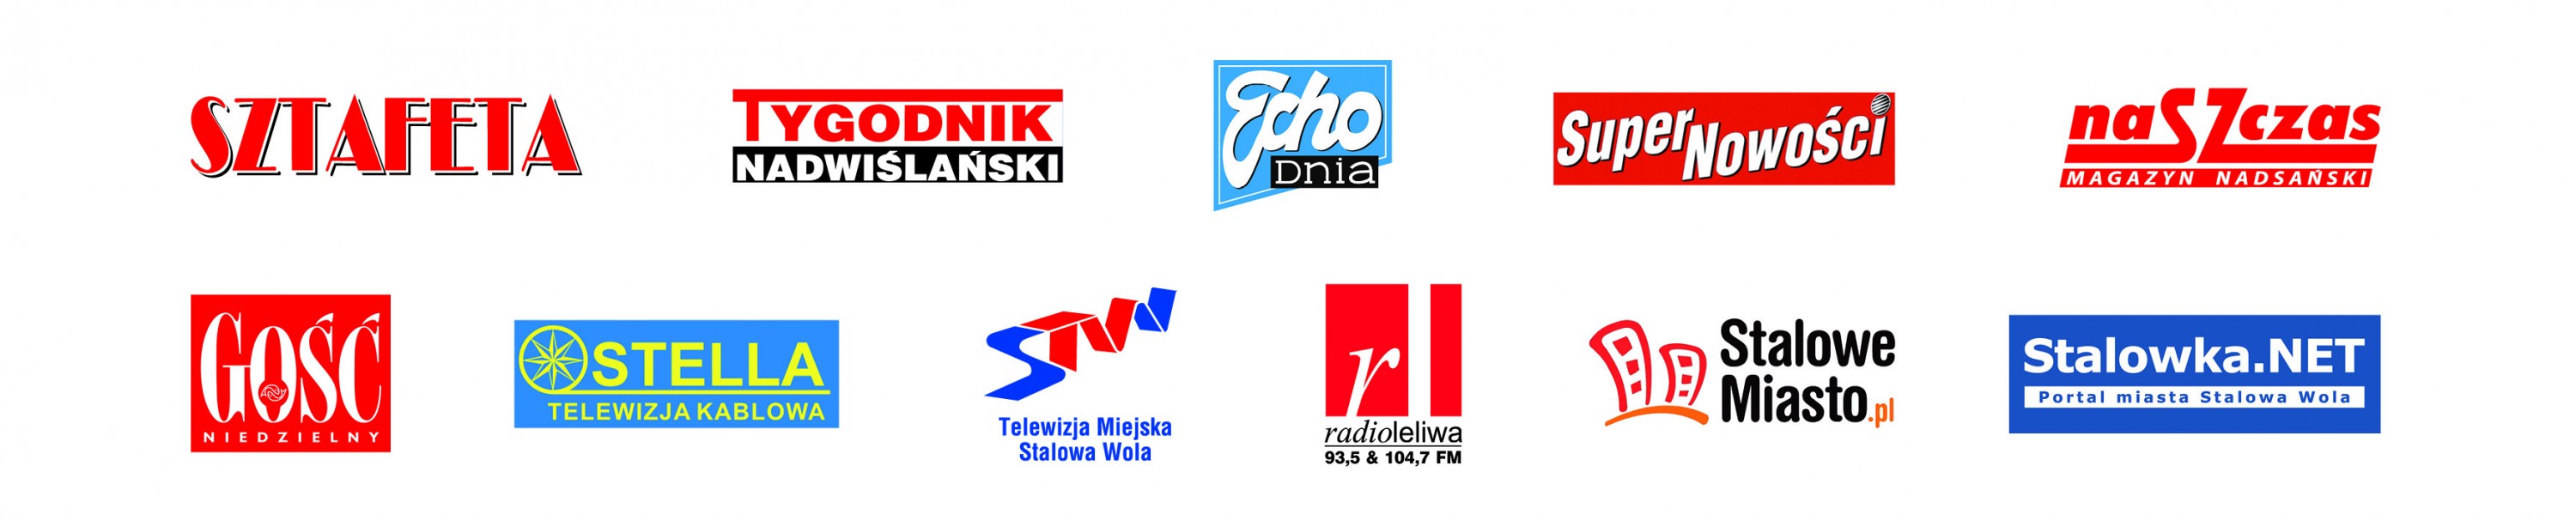 logotypy lokalnych mediów